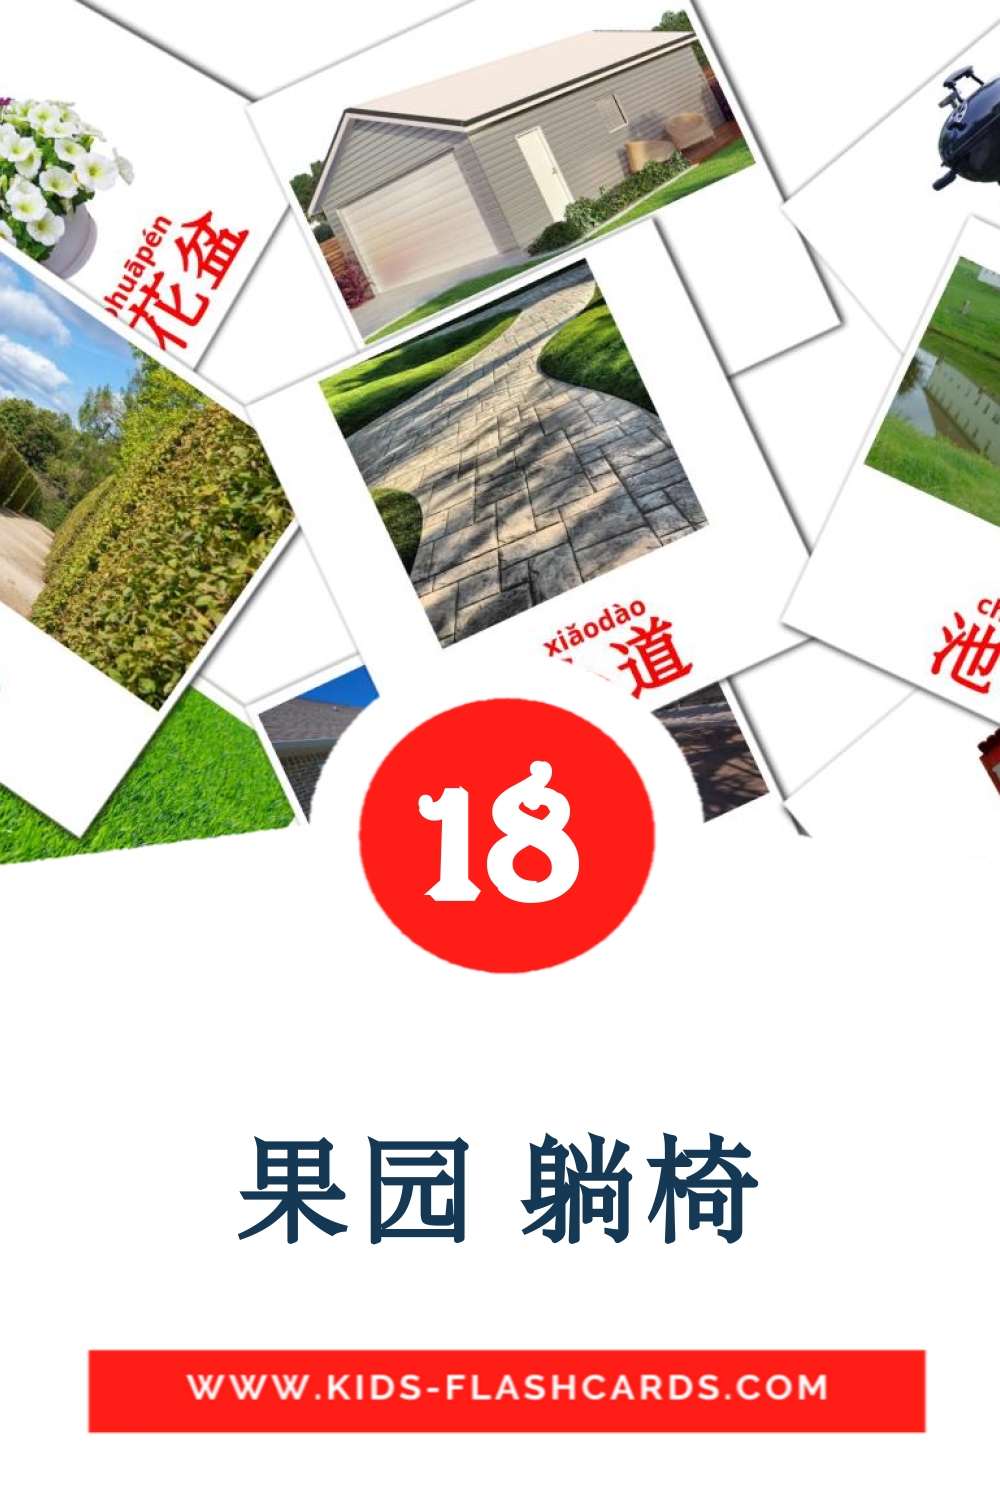 18 Cartões com Imagens de 果园 躺椅 para Jardim de Infância em chinês(simplificado)